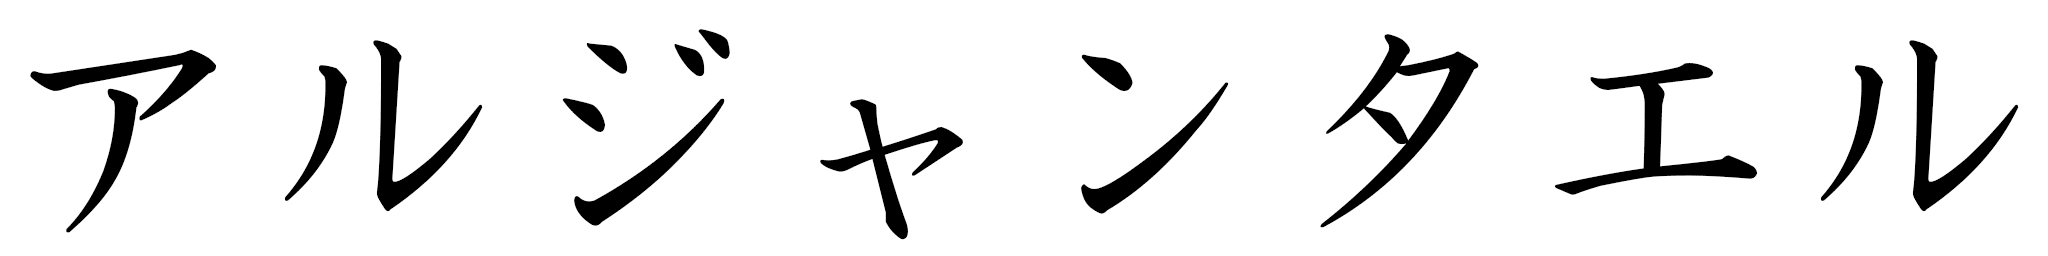 Argantaëlle en japonais